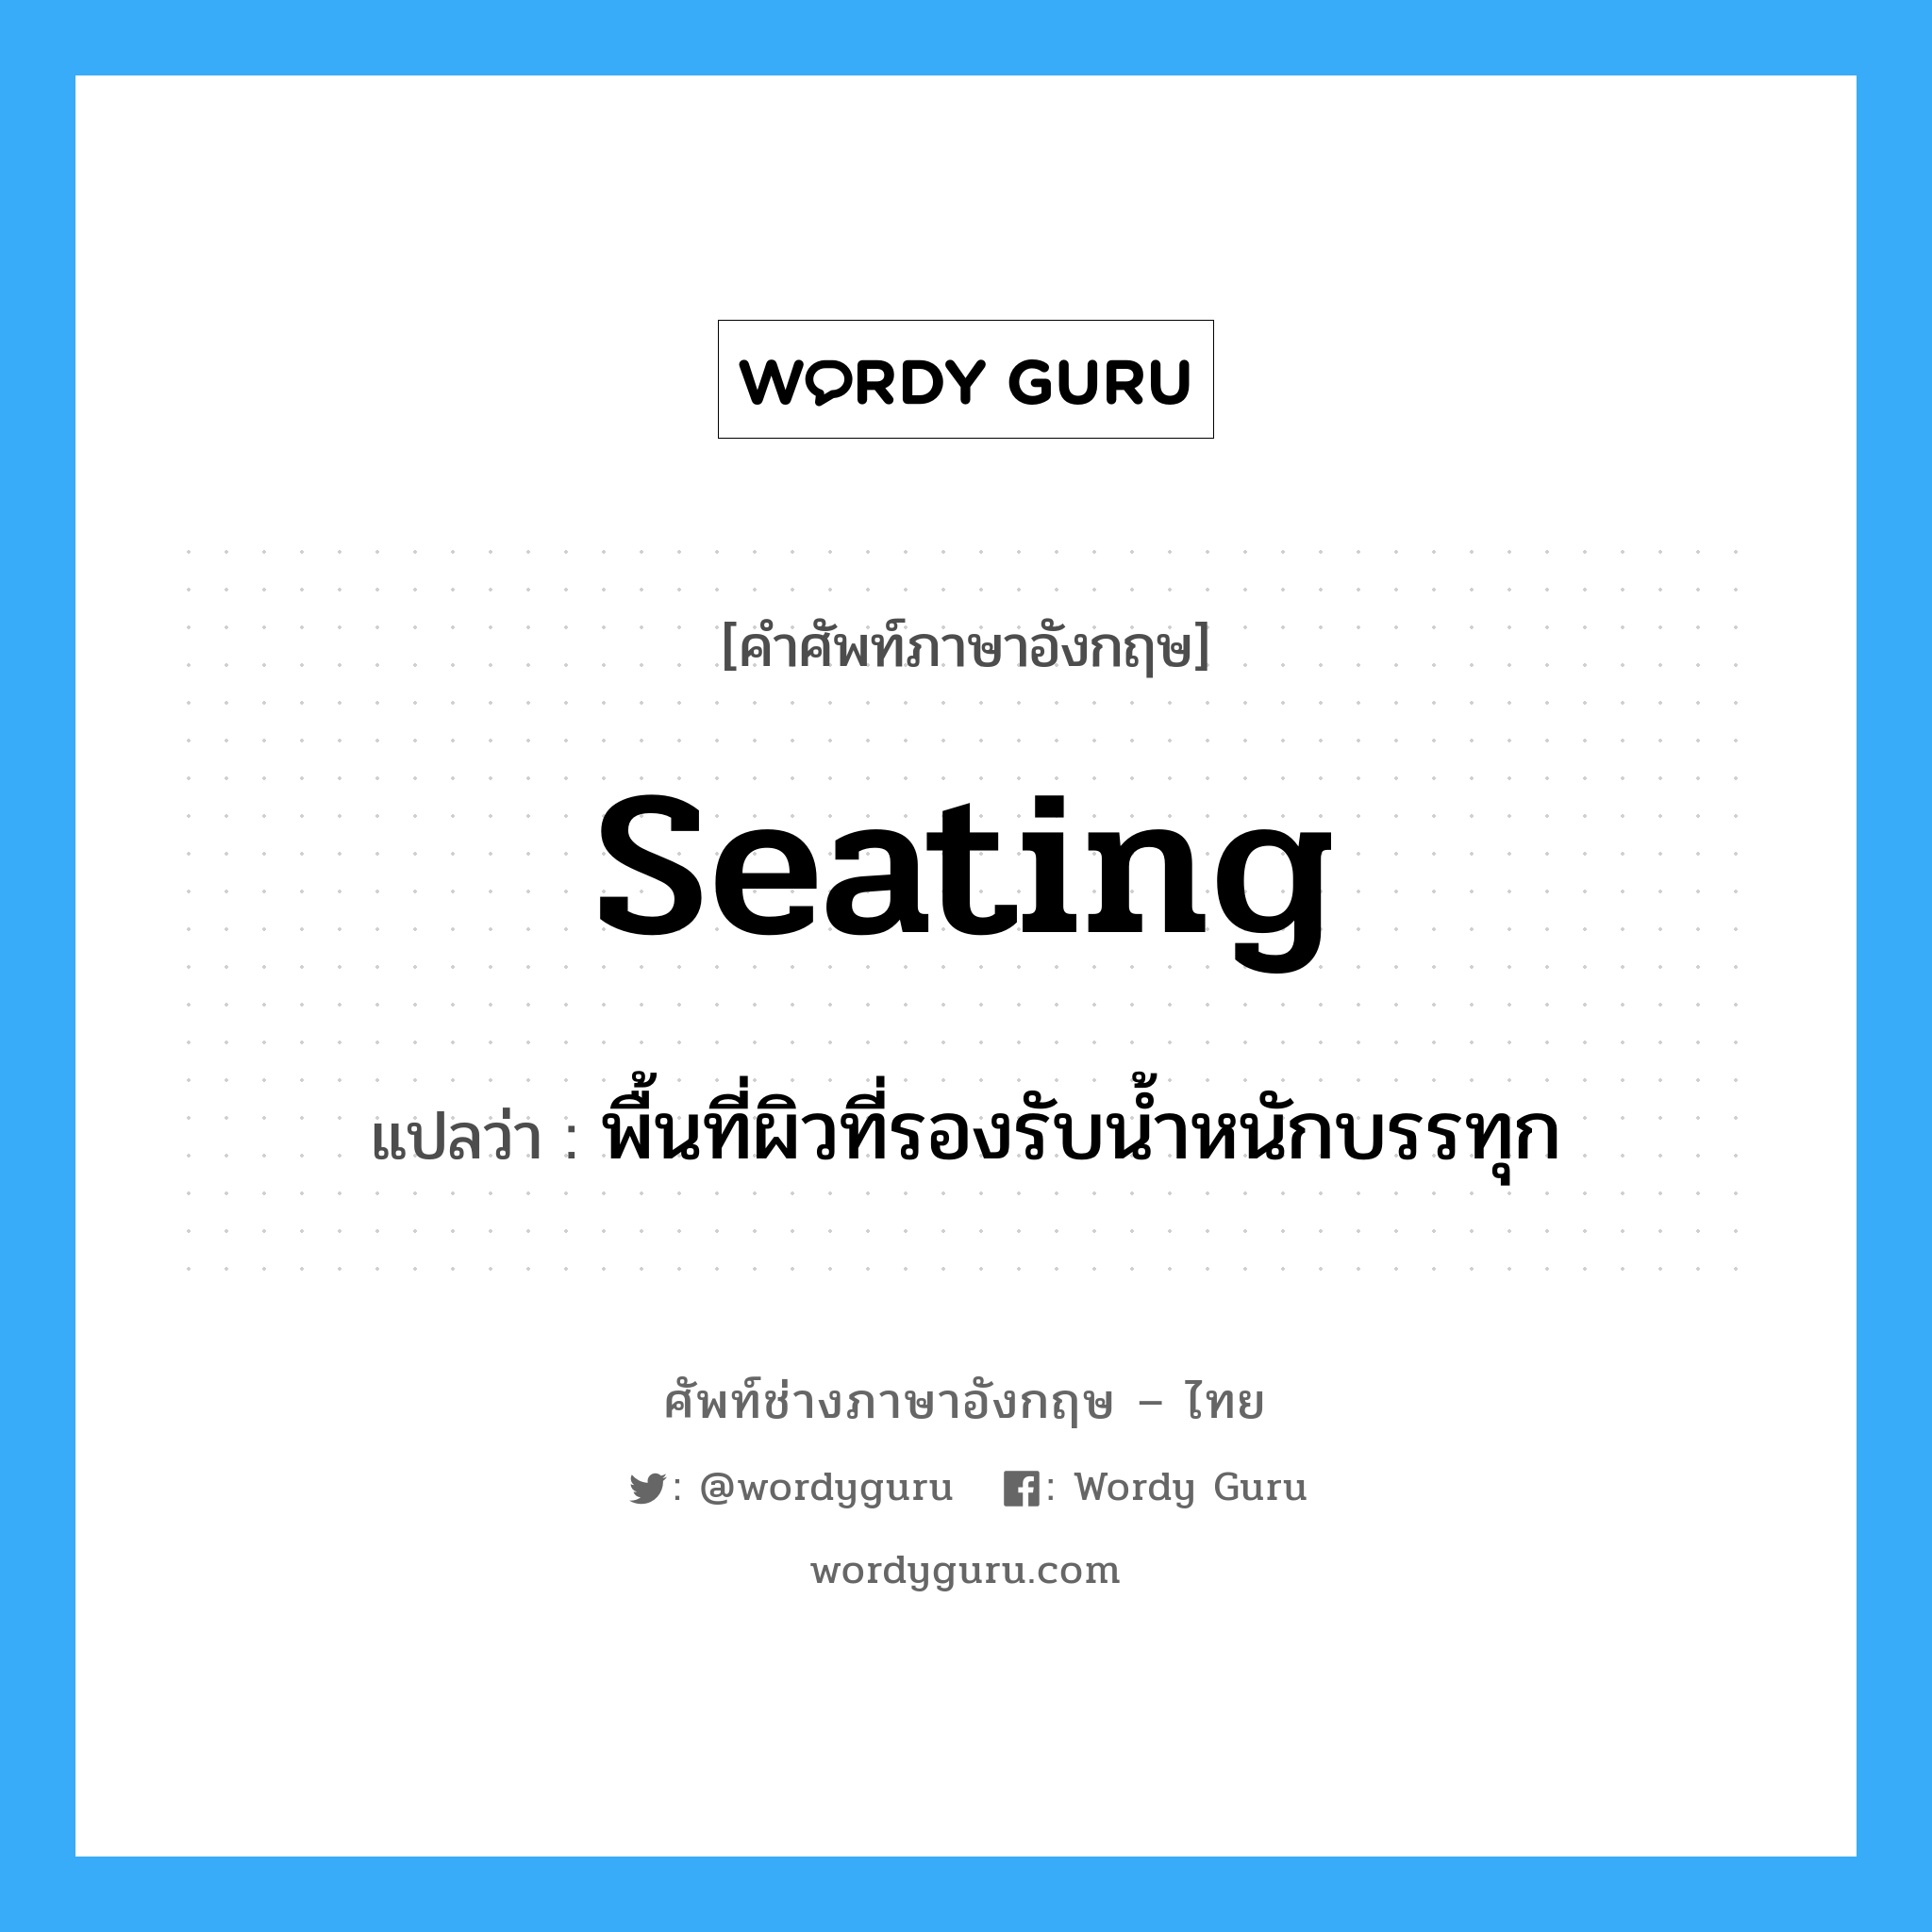 พื้นที่ผิวที่รองรับน้ำหนักบรรทุก ภาษาอังกฤษ?, คำศัพท์ช่างภาษาอังกฤษ - ไทย พื้นที่ผิวที่รองรับน้ำหนักบรรทุก คำศัพท์ภาษาอังกฤษ พื้นที่ผิวที่รองรับน้ำหนักบรรทุก แปลว่า seating